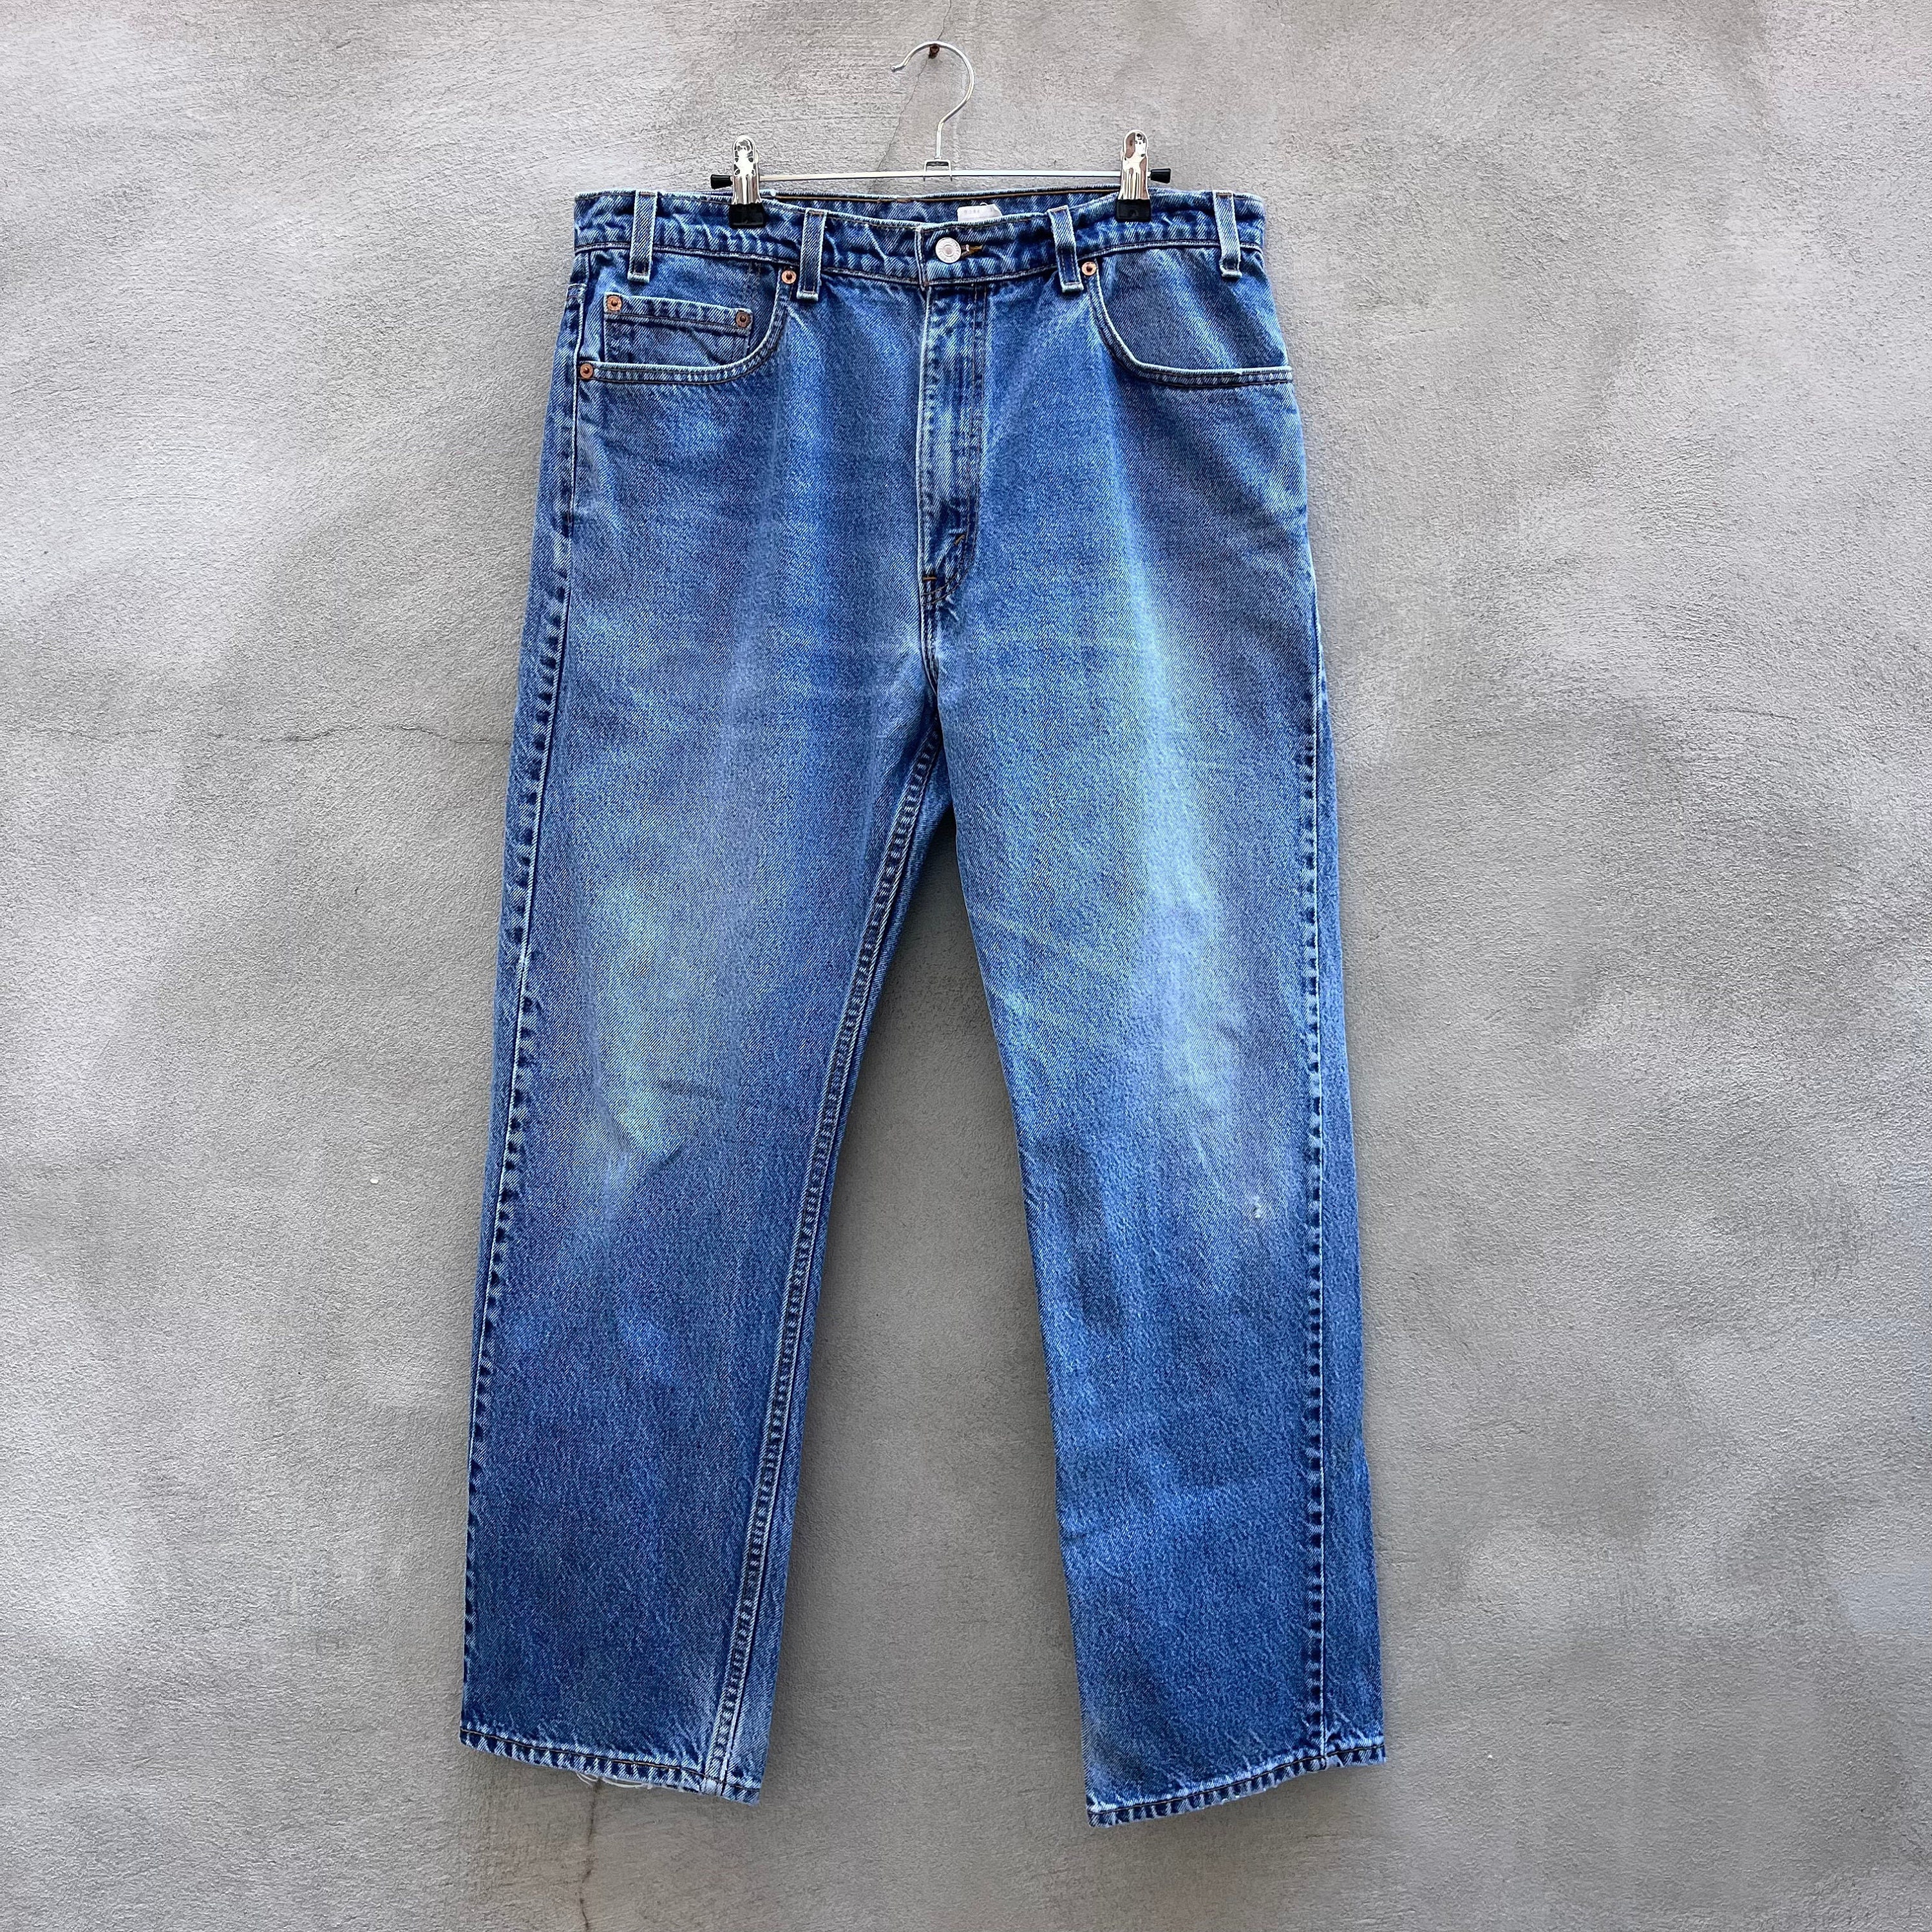 Caesar Washington Jr Jeans Blue Vintage Baggy Jeans 90s Hip Hop